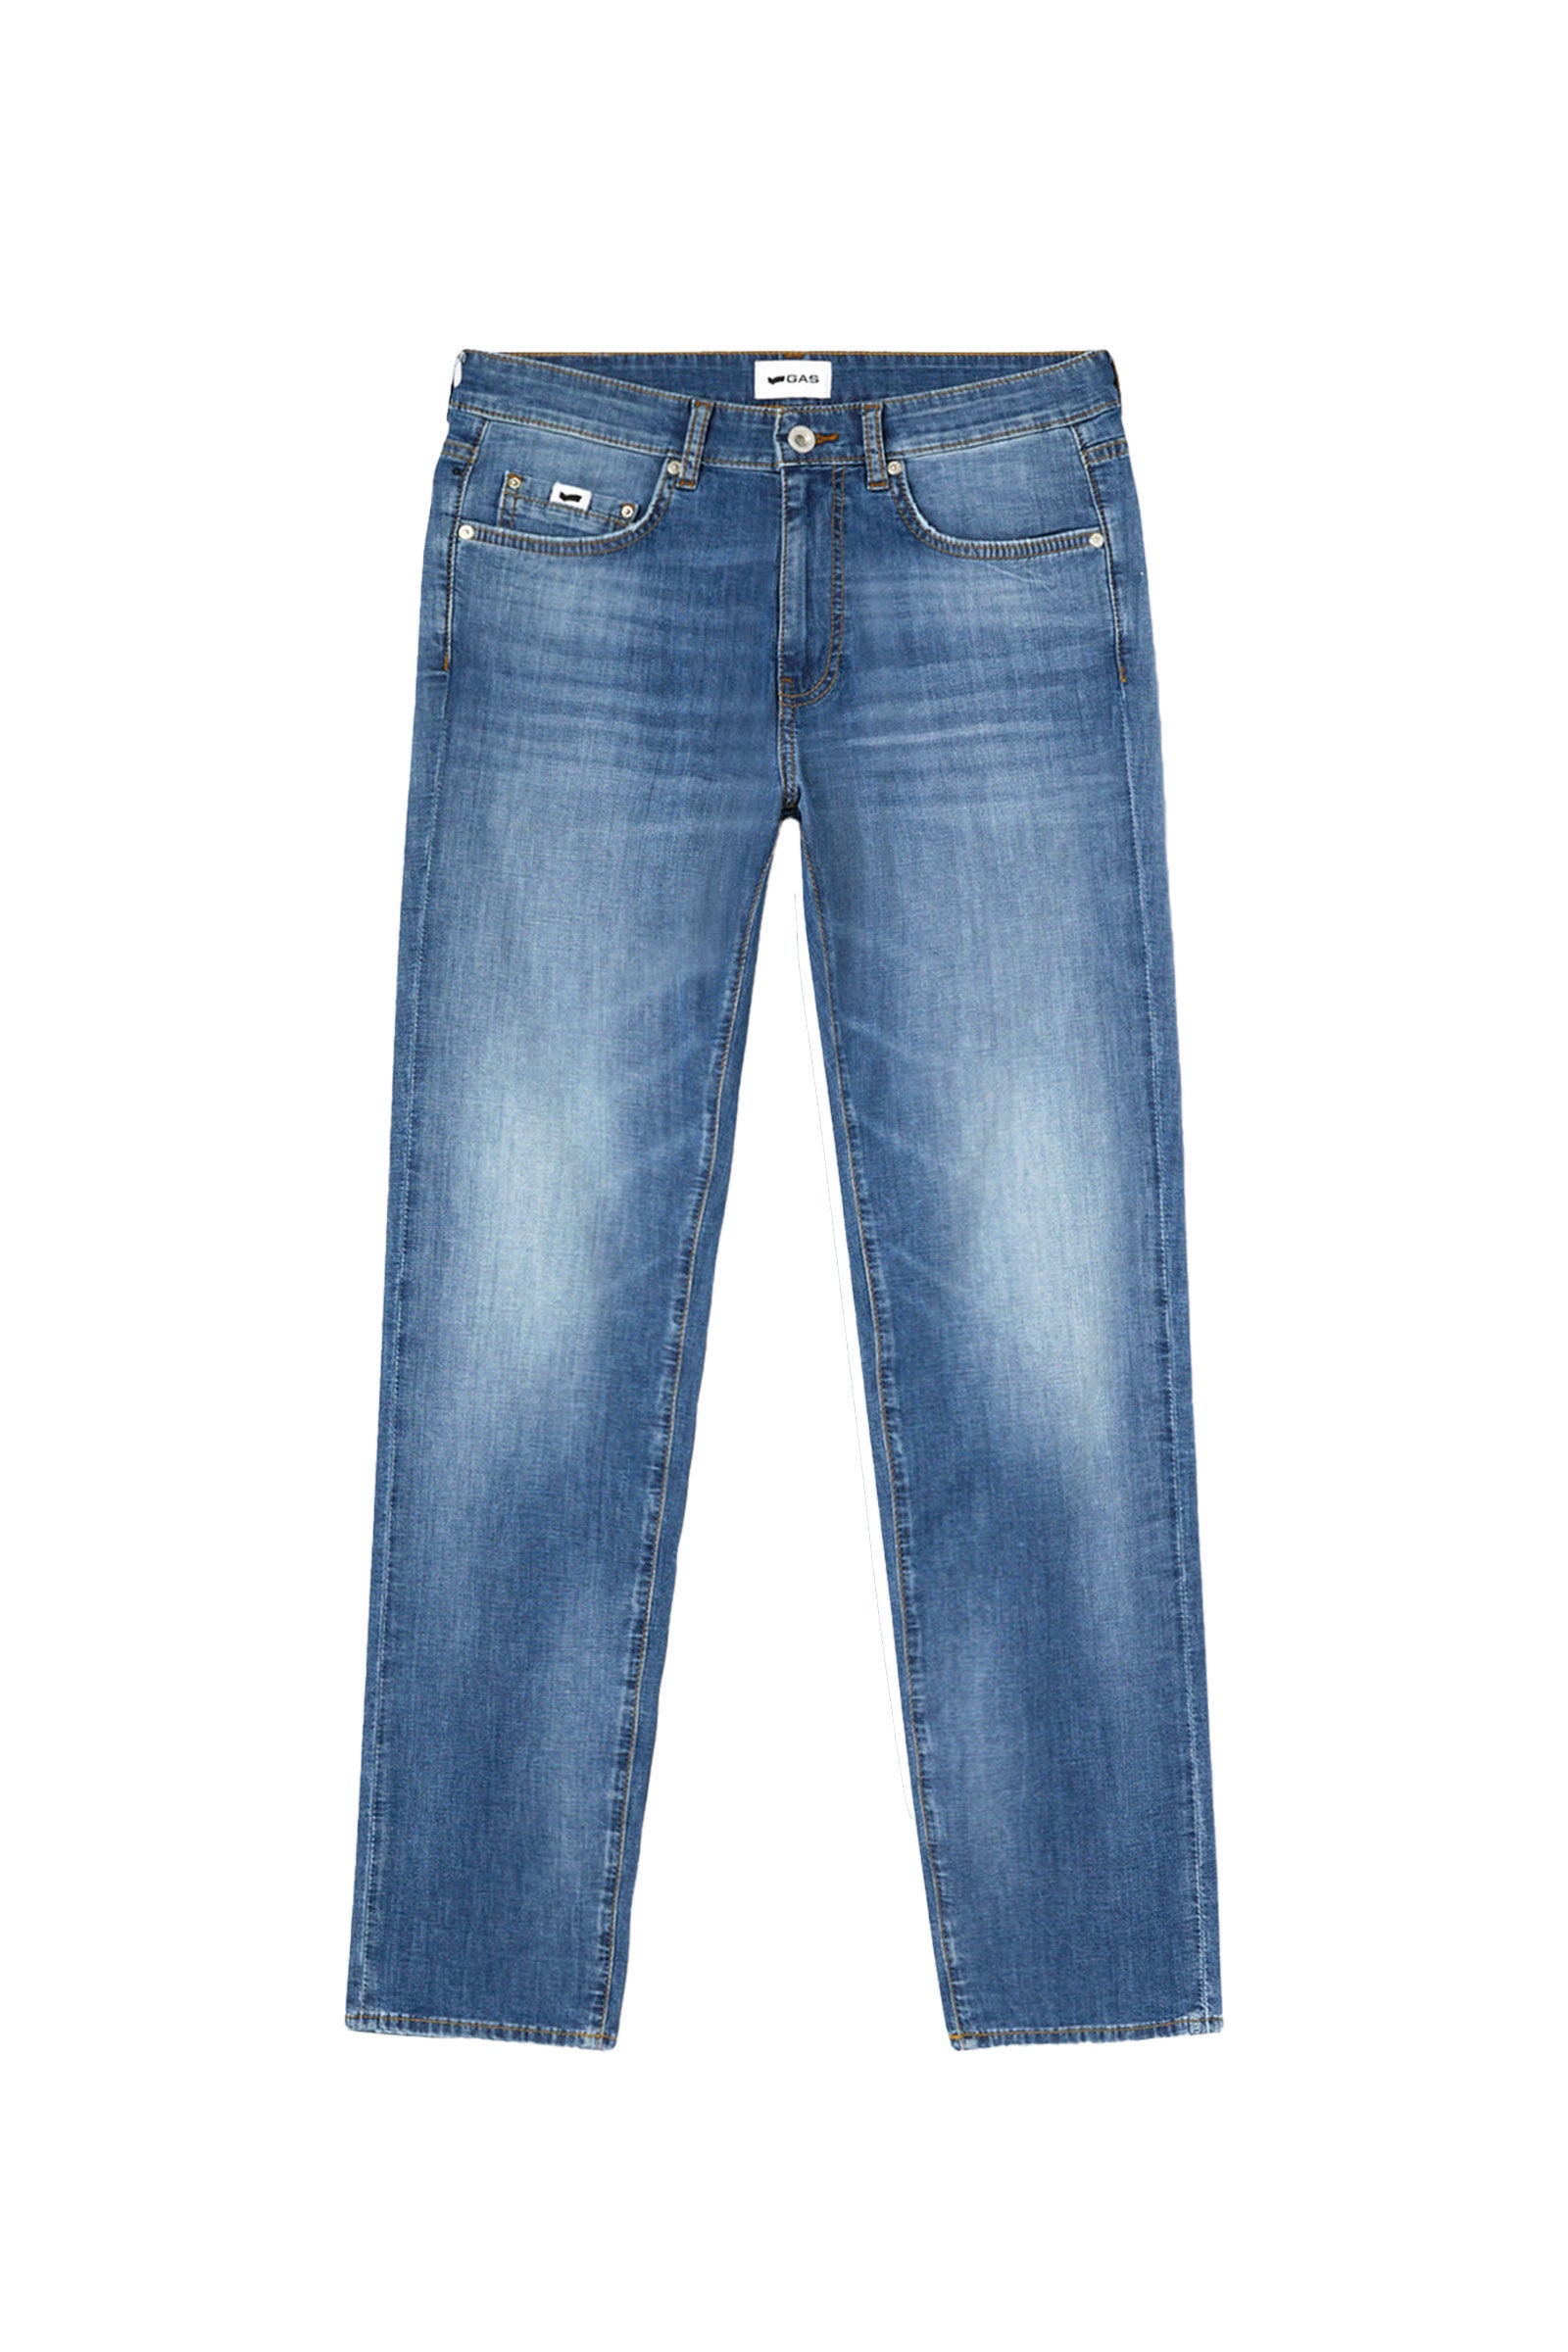 Albert Simple Rev 5 Pocket in Light Medium Jeans GAS   